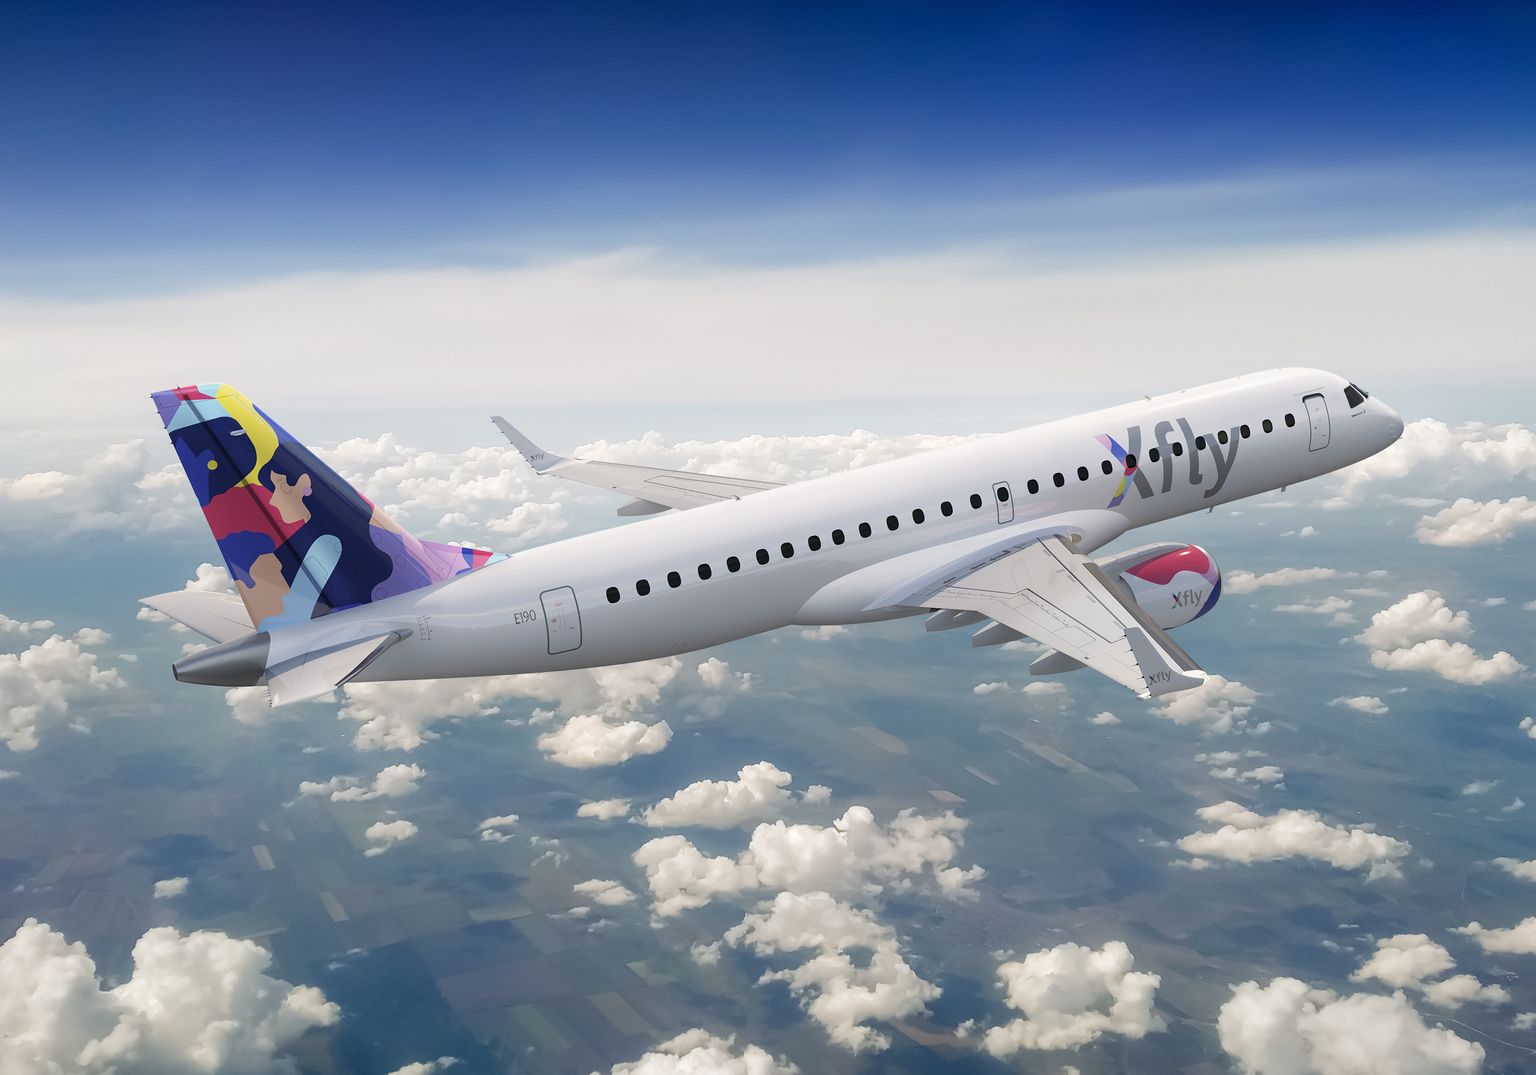 Предприятие Regional Jet работает под брендом Xfly.